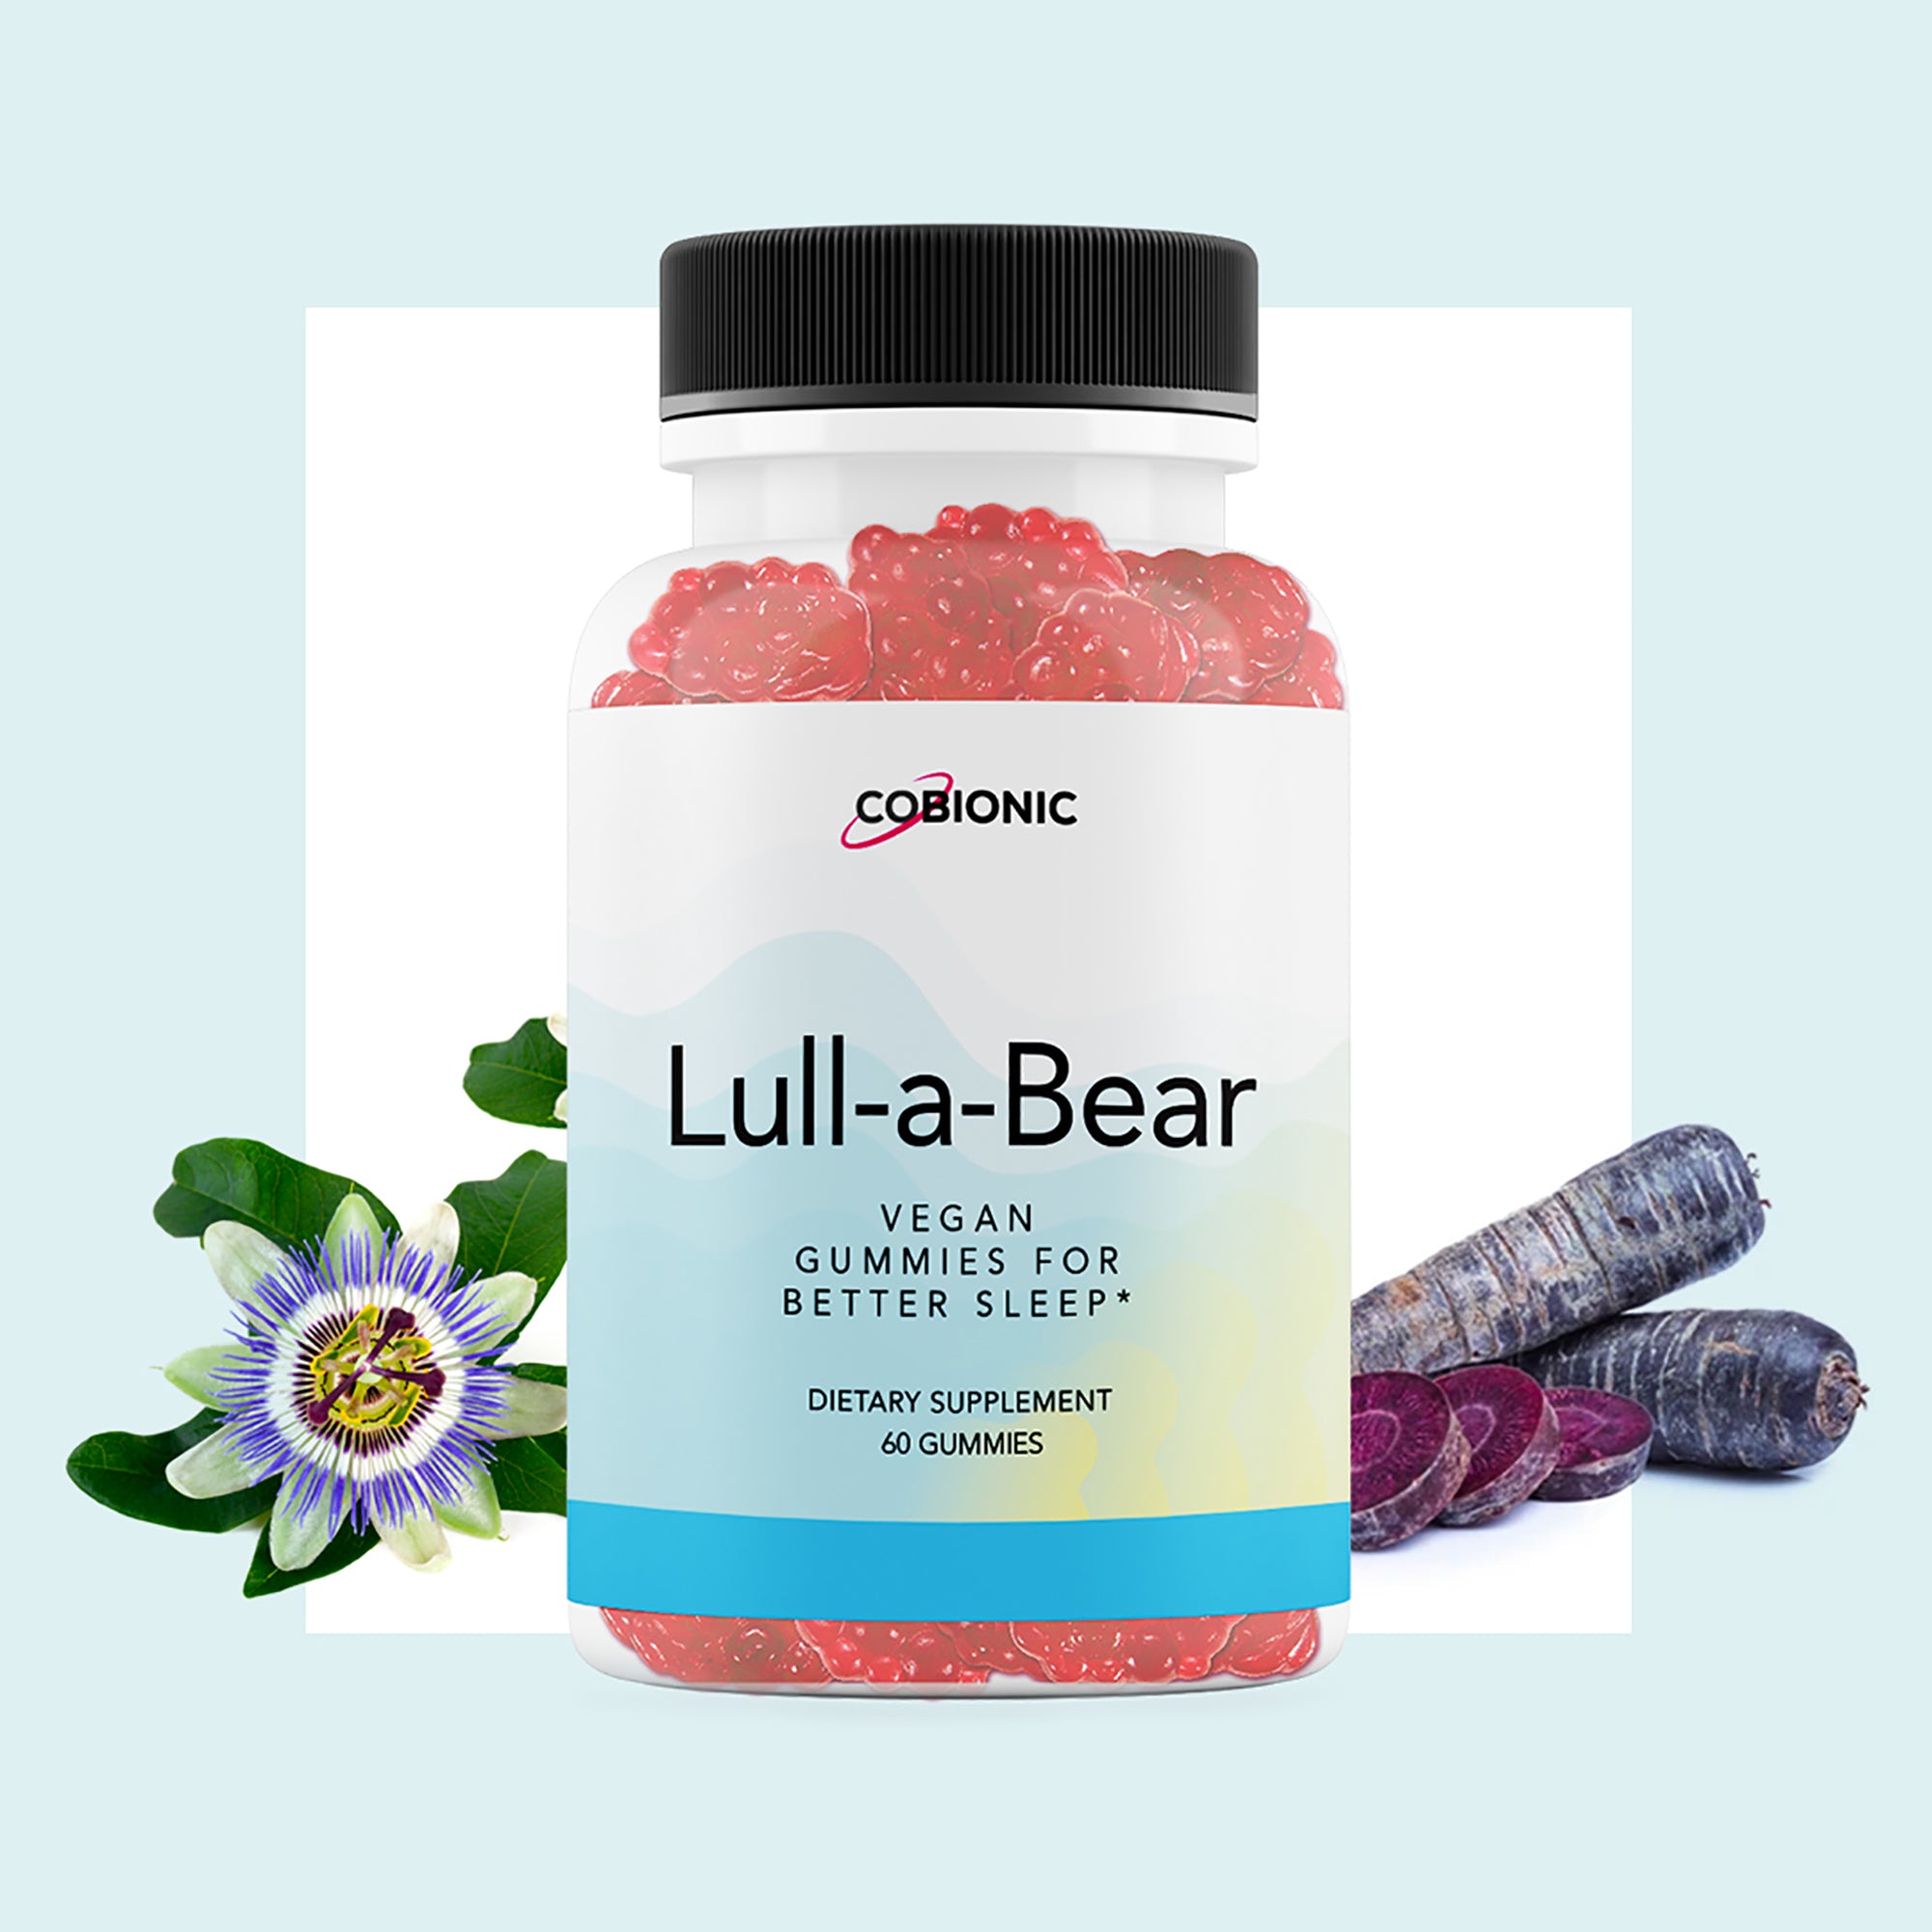 Lull-a-Bear Sleep Gummies